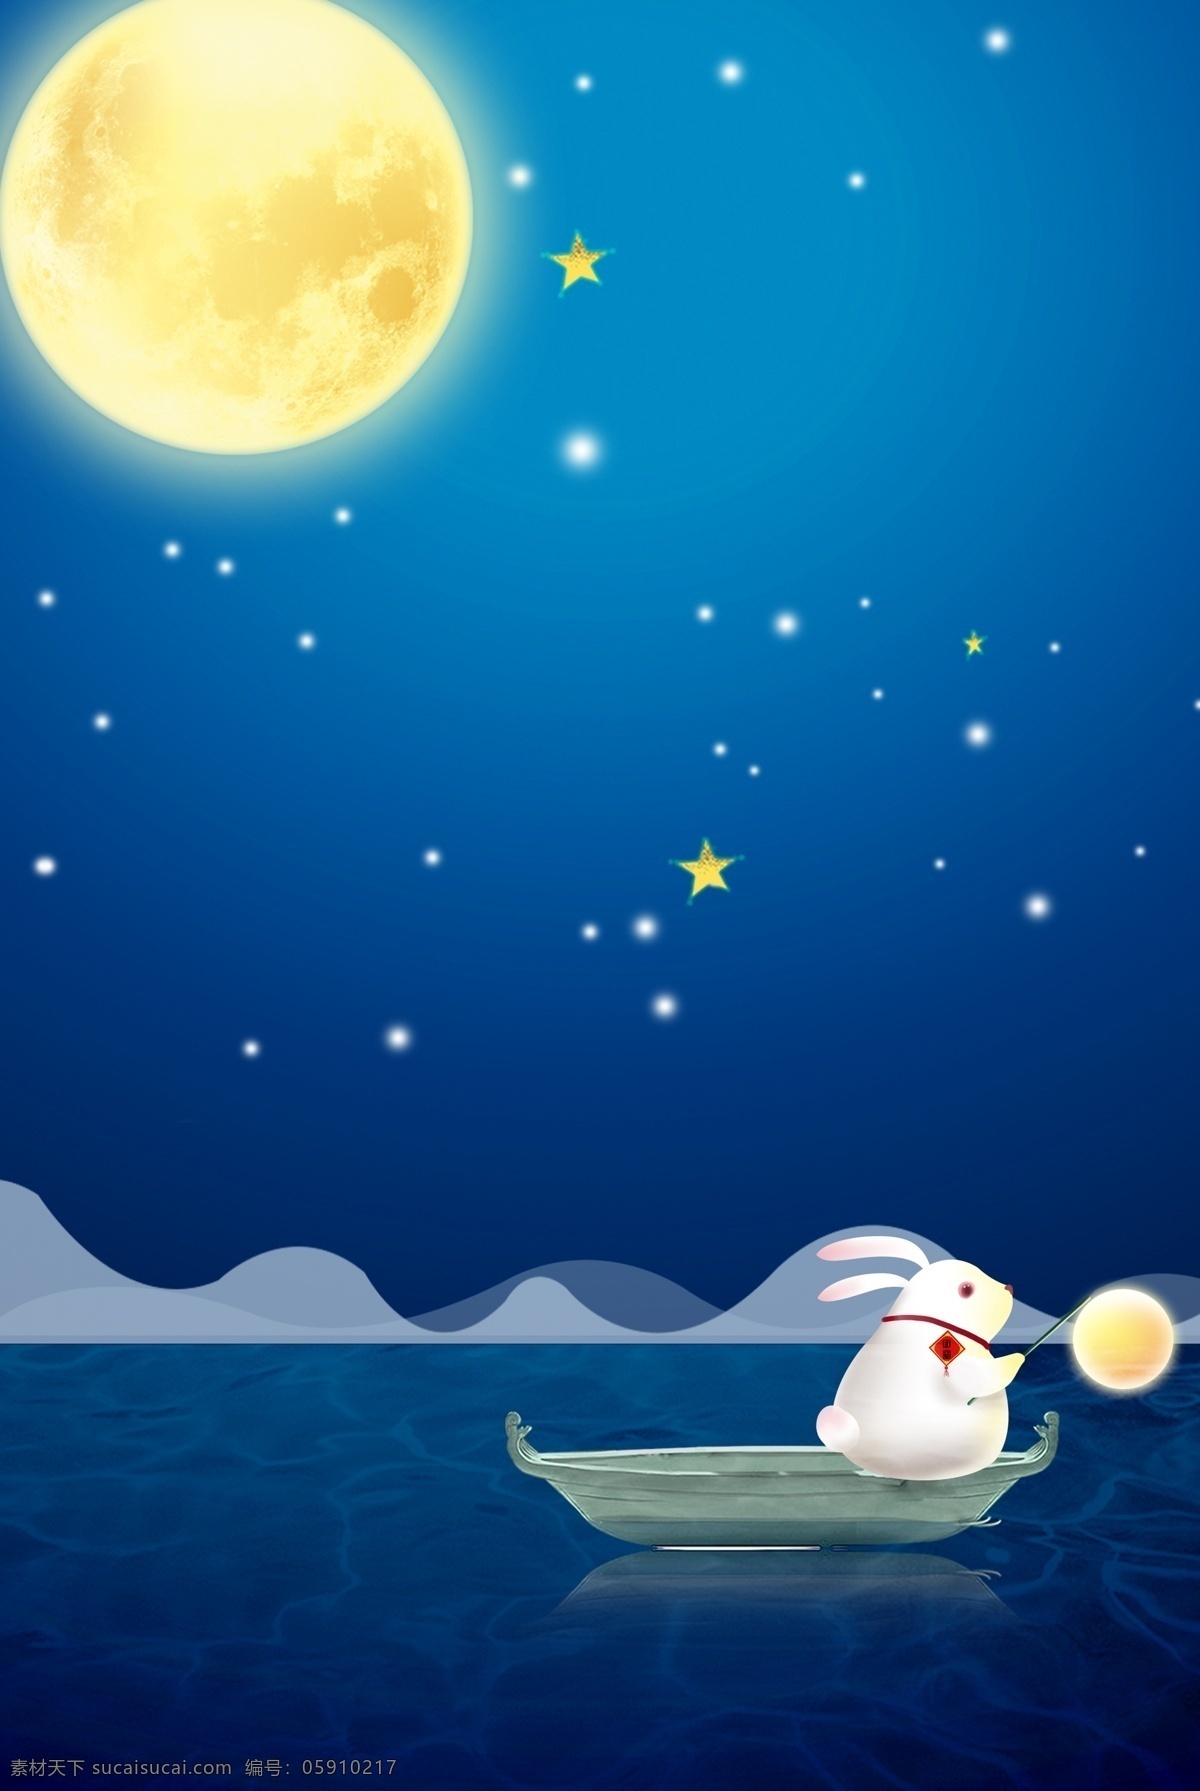 创意 合成 中秋节 背景 卡通 手绘 月圆 兔子 夜晚 形象 清新 节日 团圆